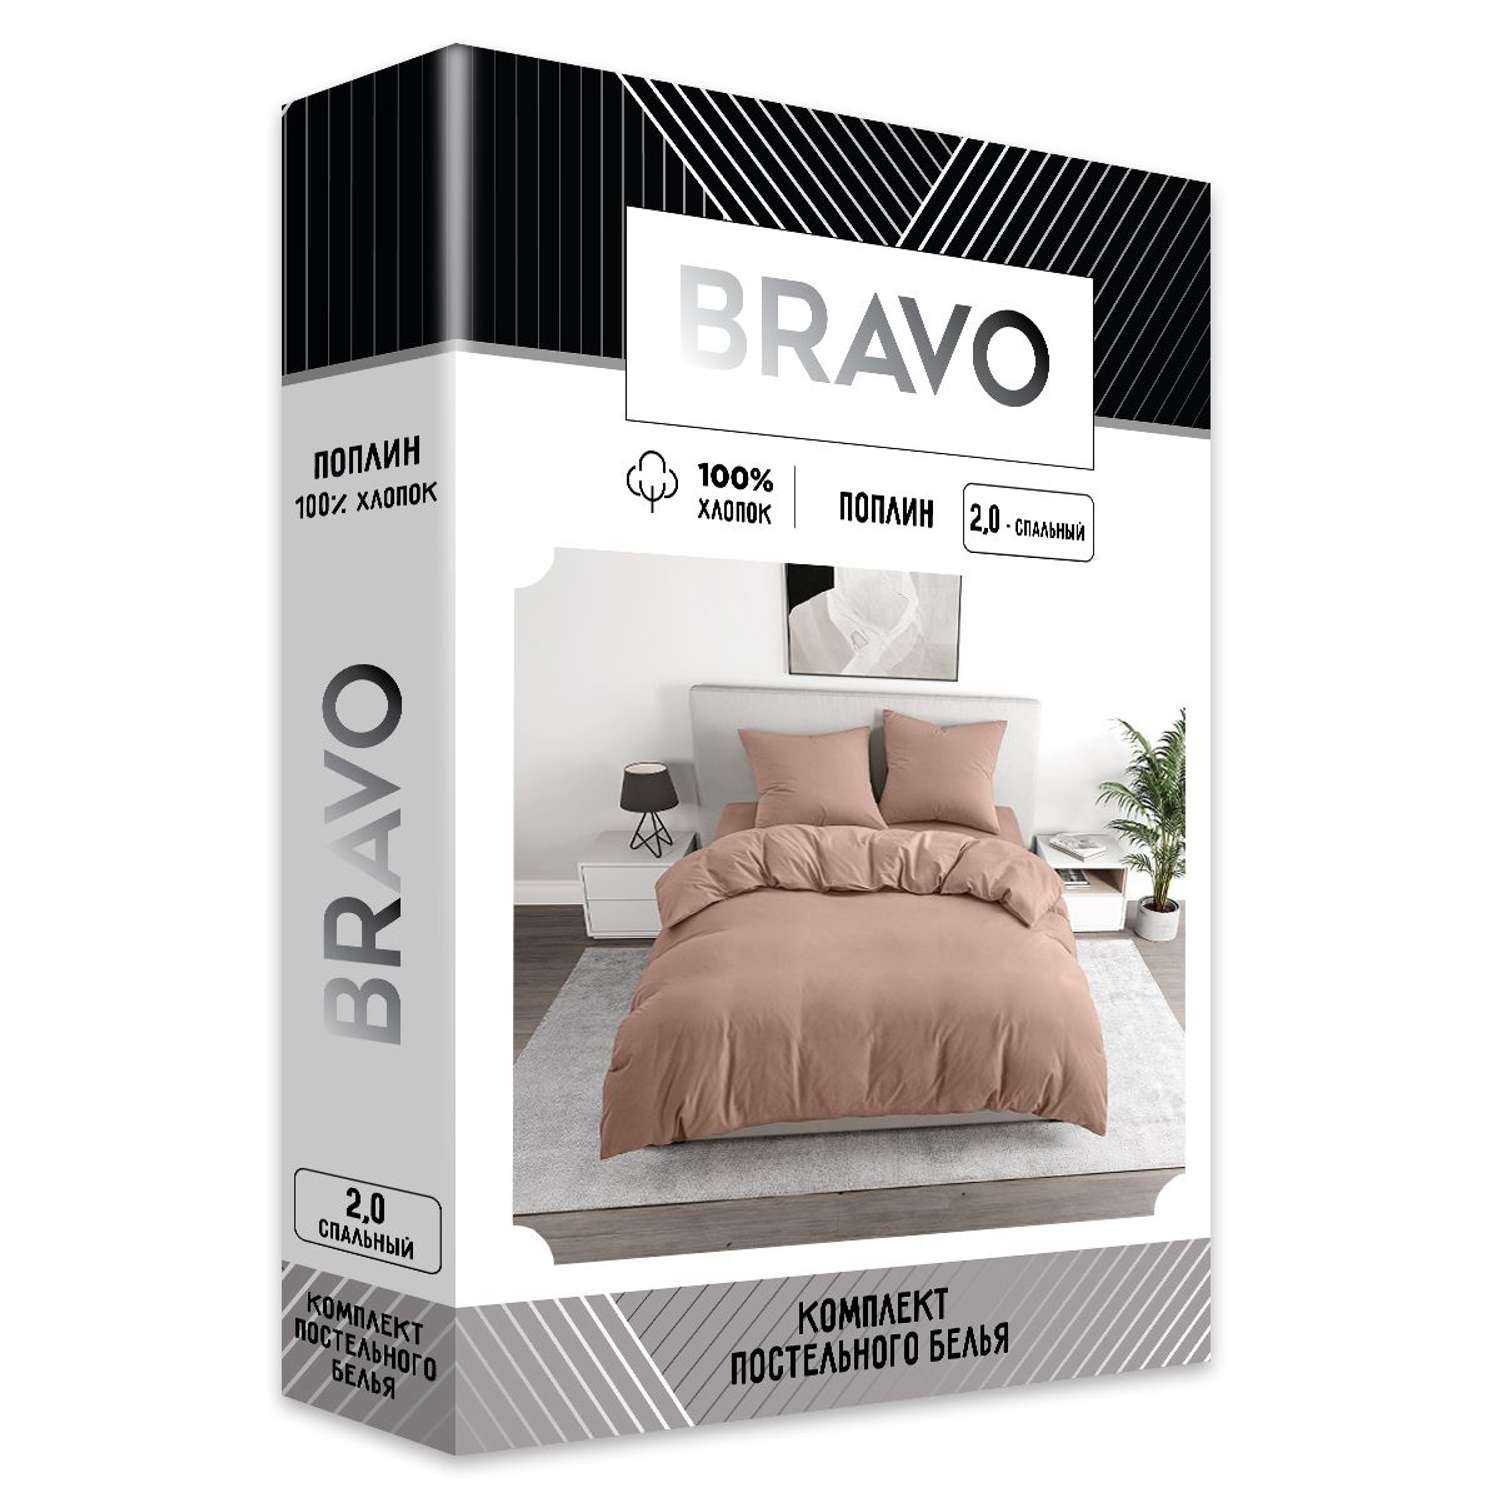 Комплект постельного белья BRAVO 2-спальный макси наволочки 70х70 рис.5112-1 пудровый - фото 5